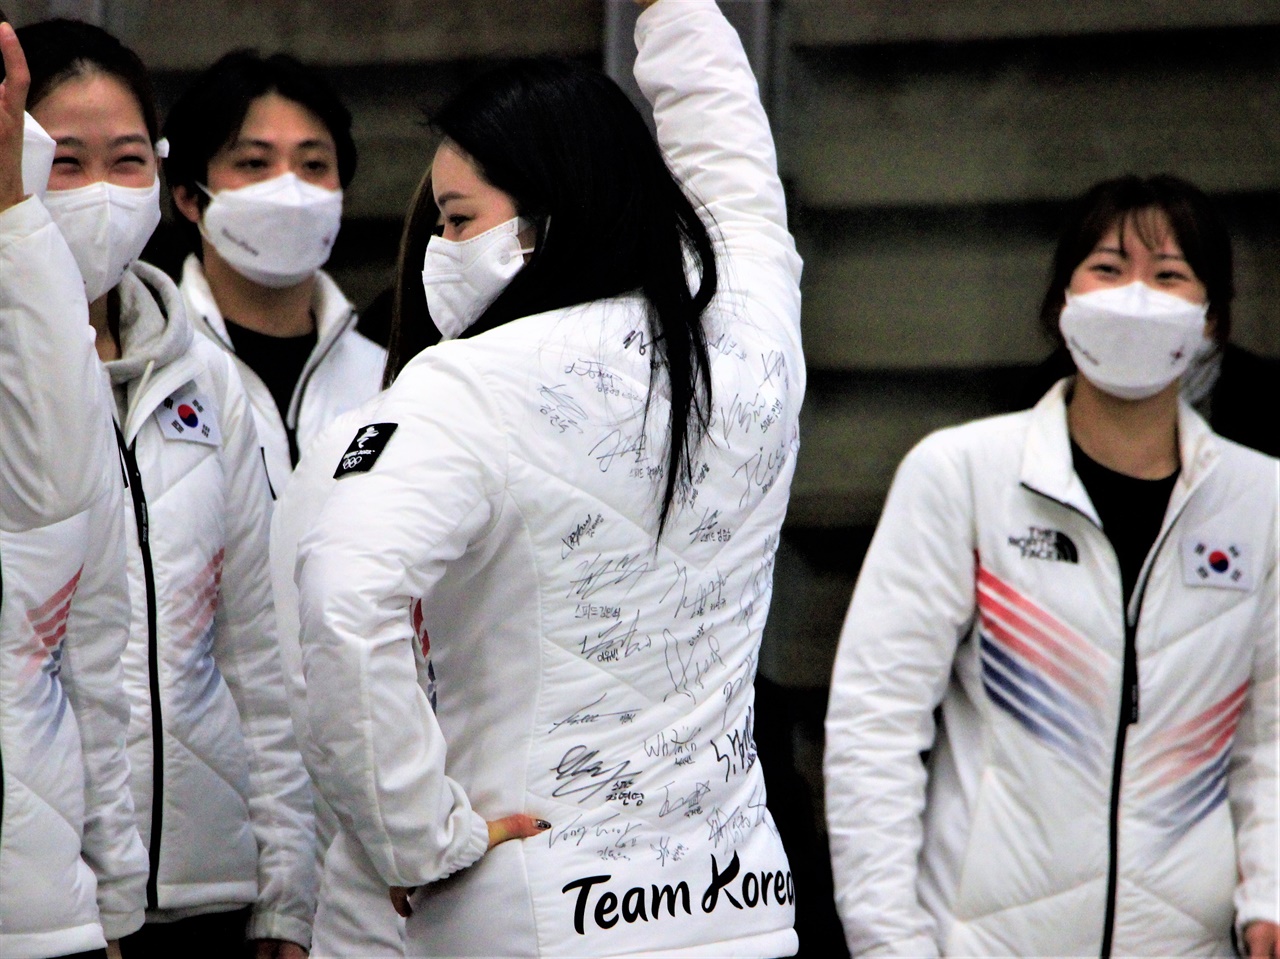  컬링 국가대표 김경애 선수가 선수단복 뒤에 잔뜩 적힌 동료 선수들의 싸인을 뽐내고 있다.